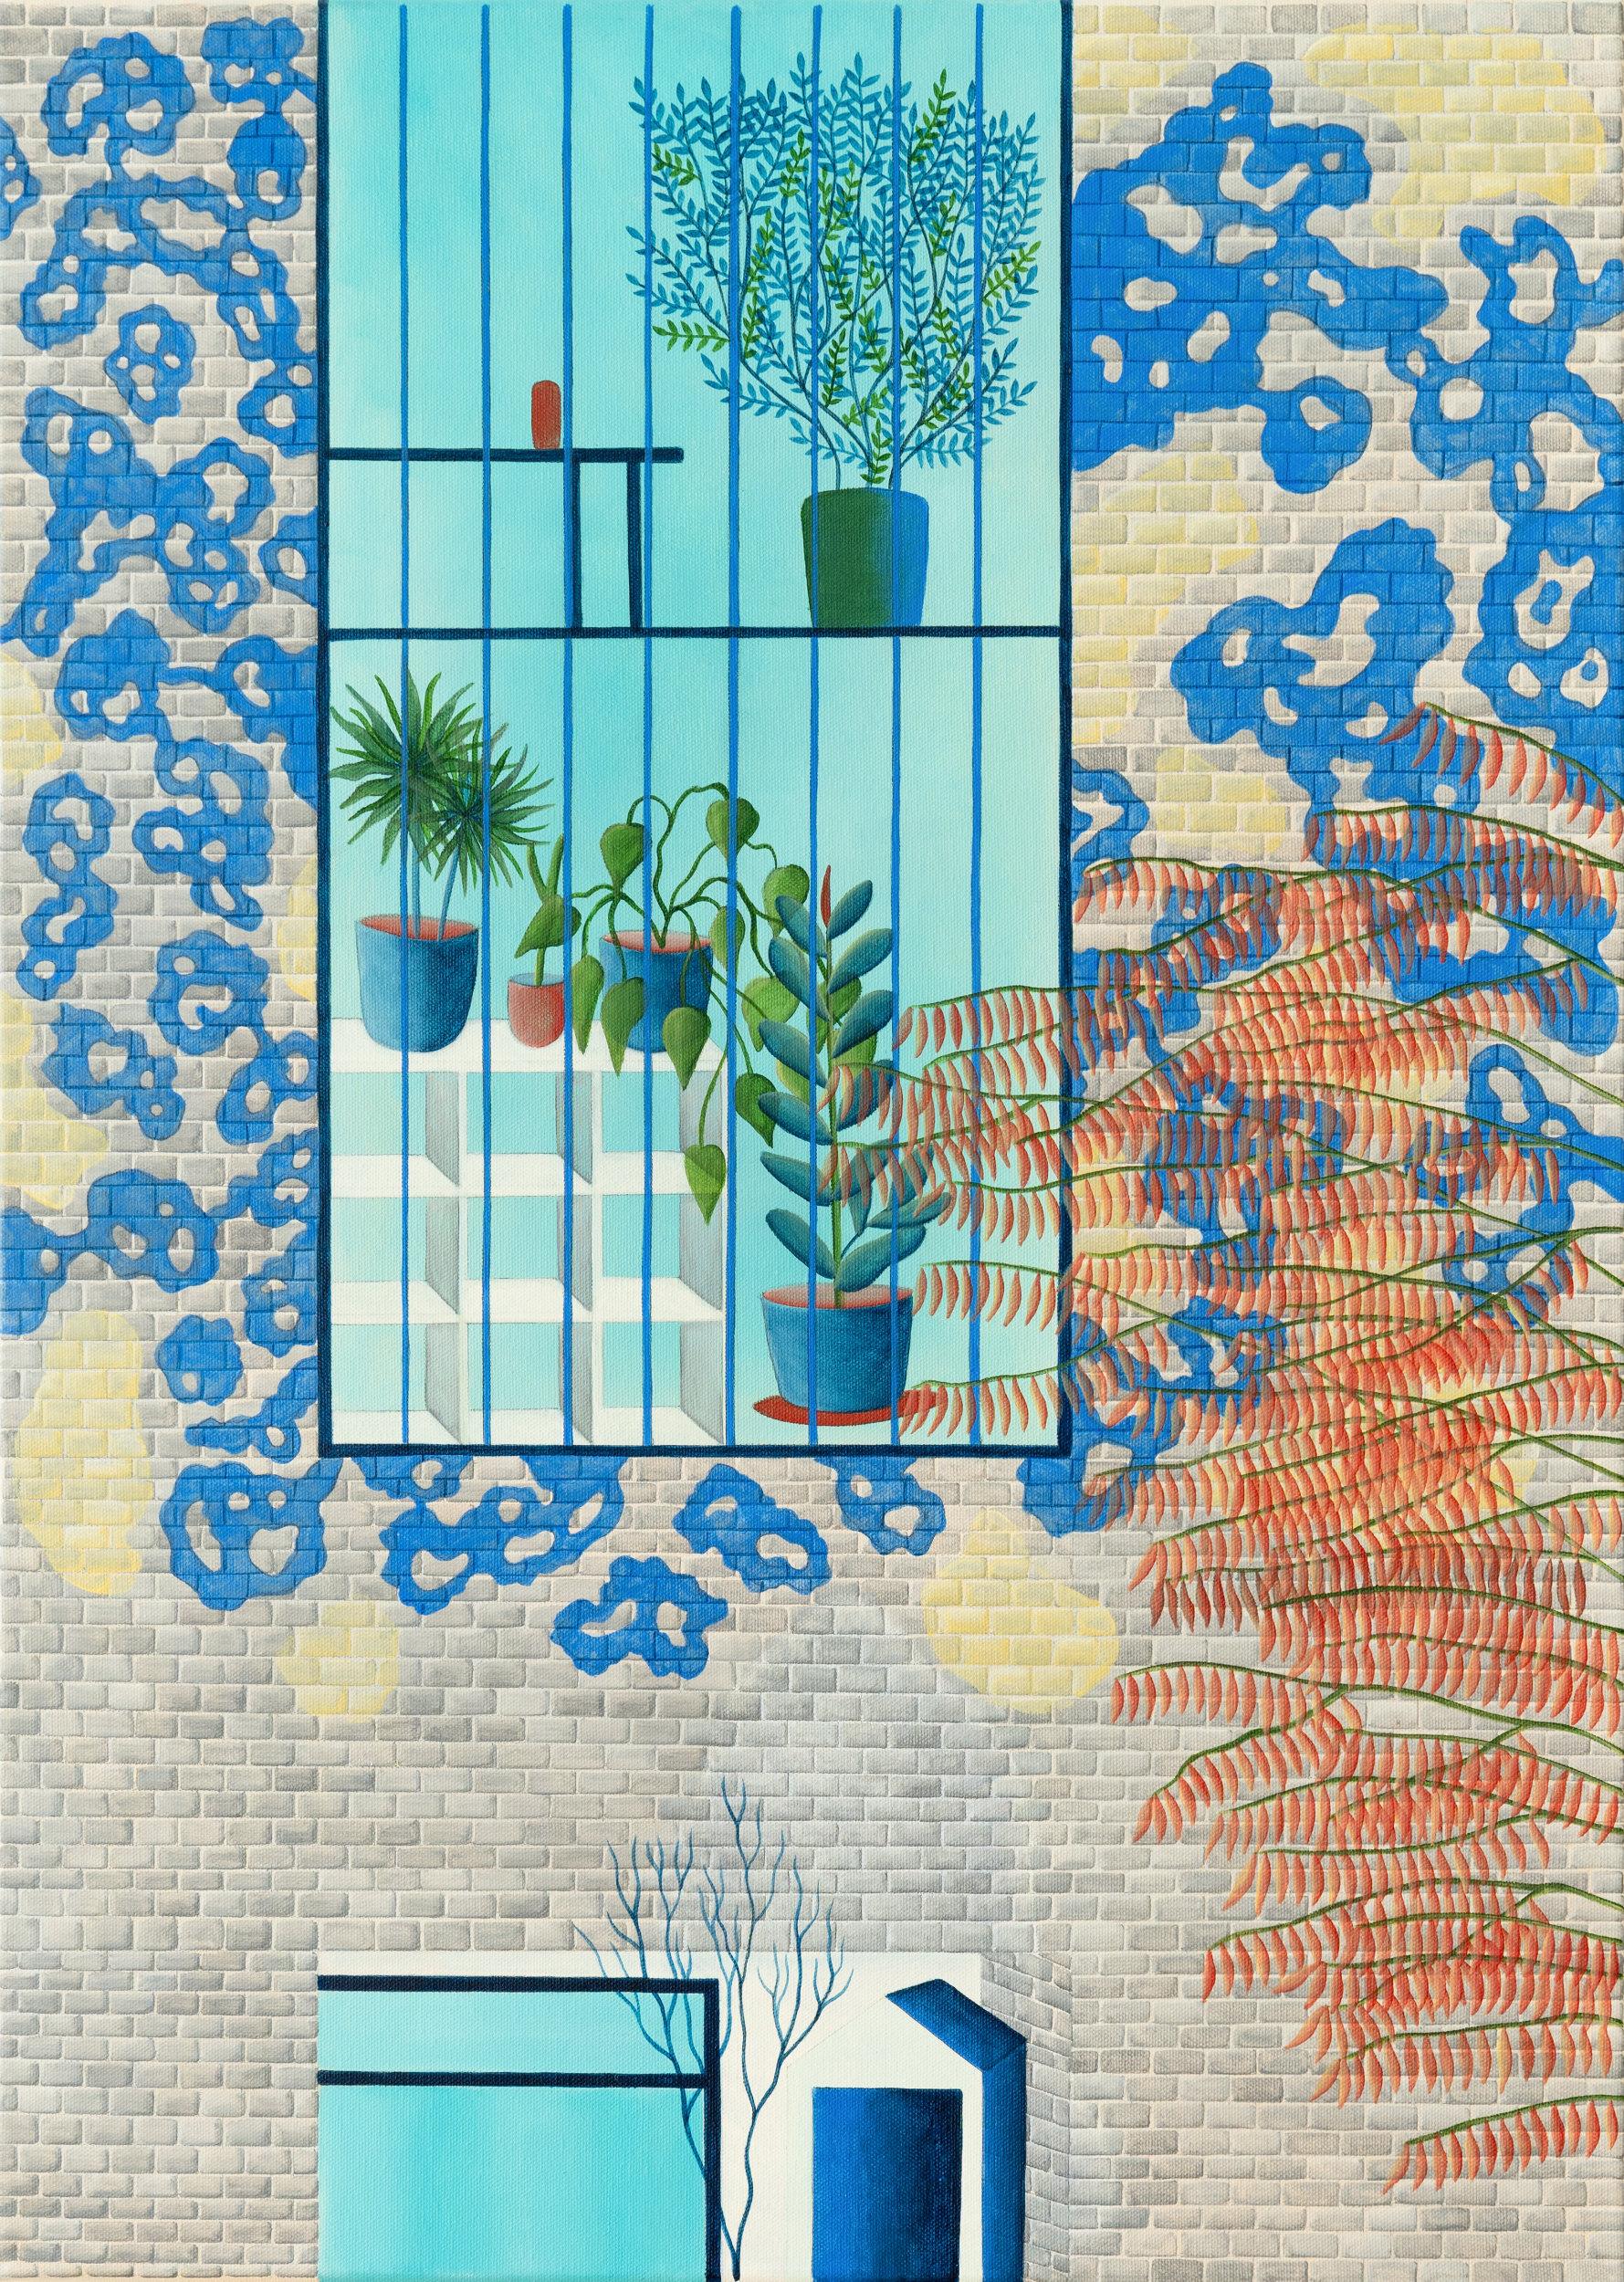 Vue de la fenêtre | View of the Window - Contemporary Painting on Canvas